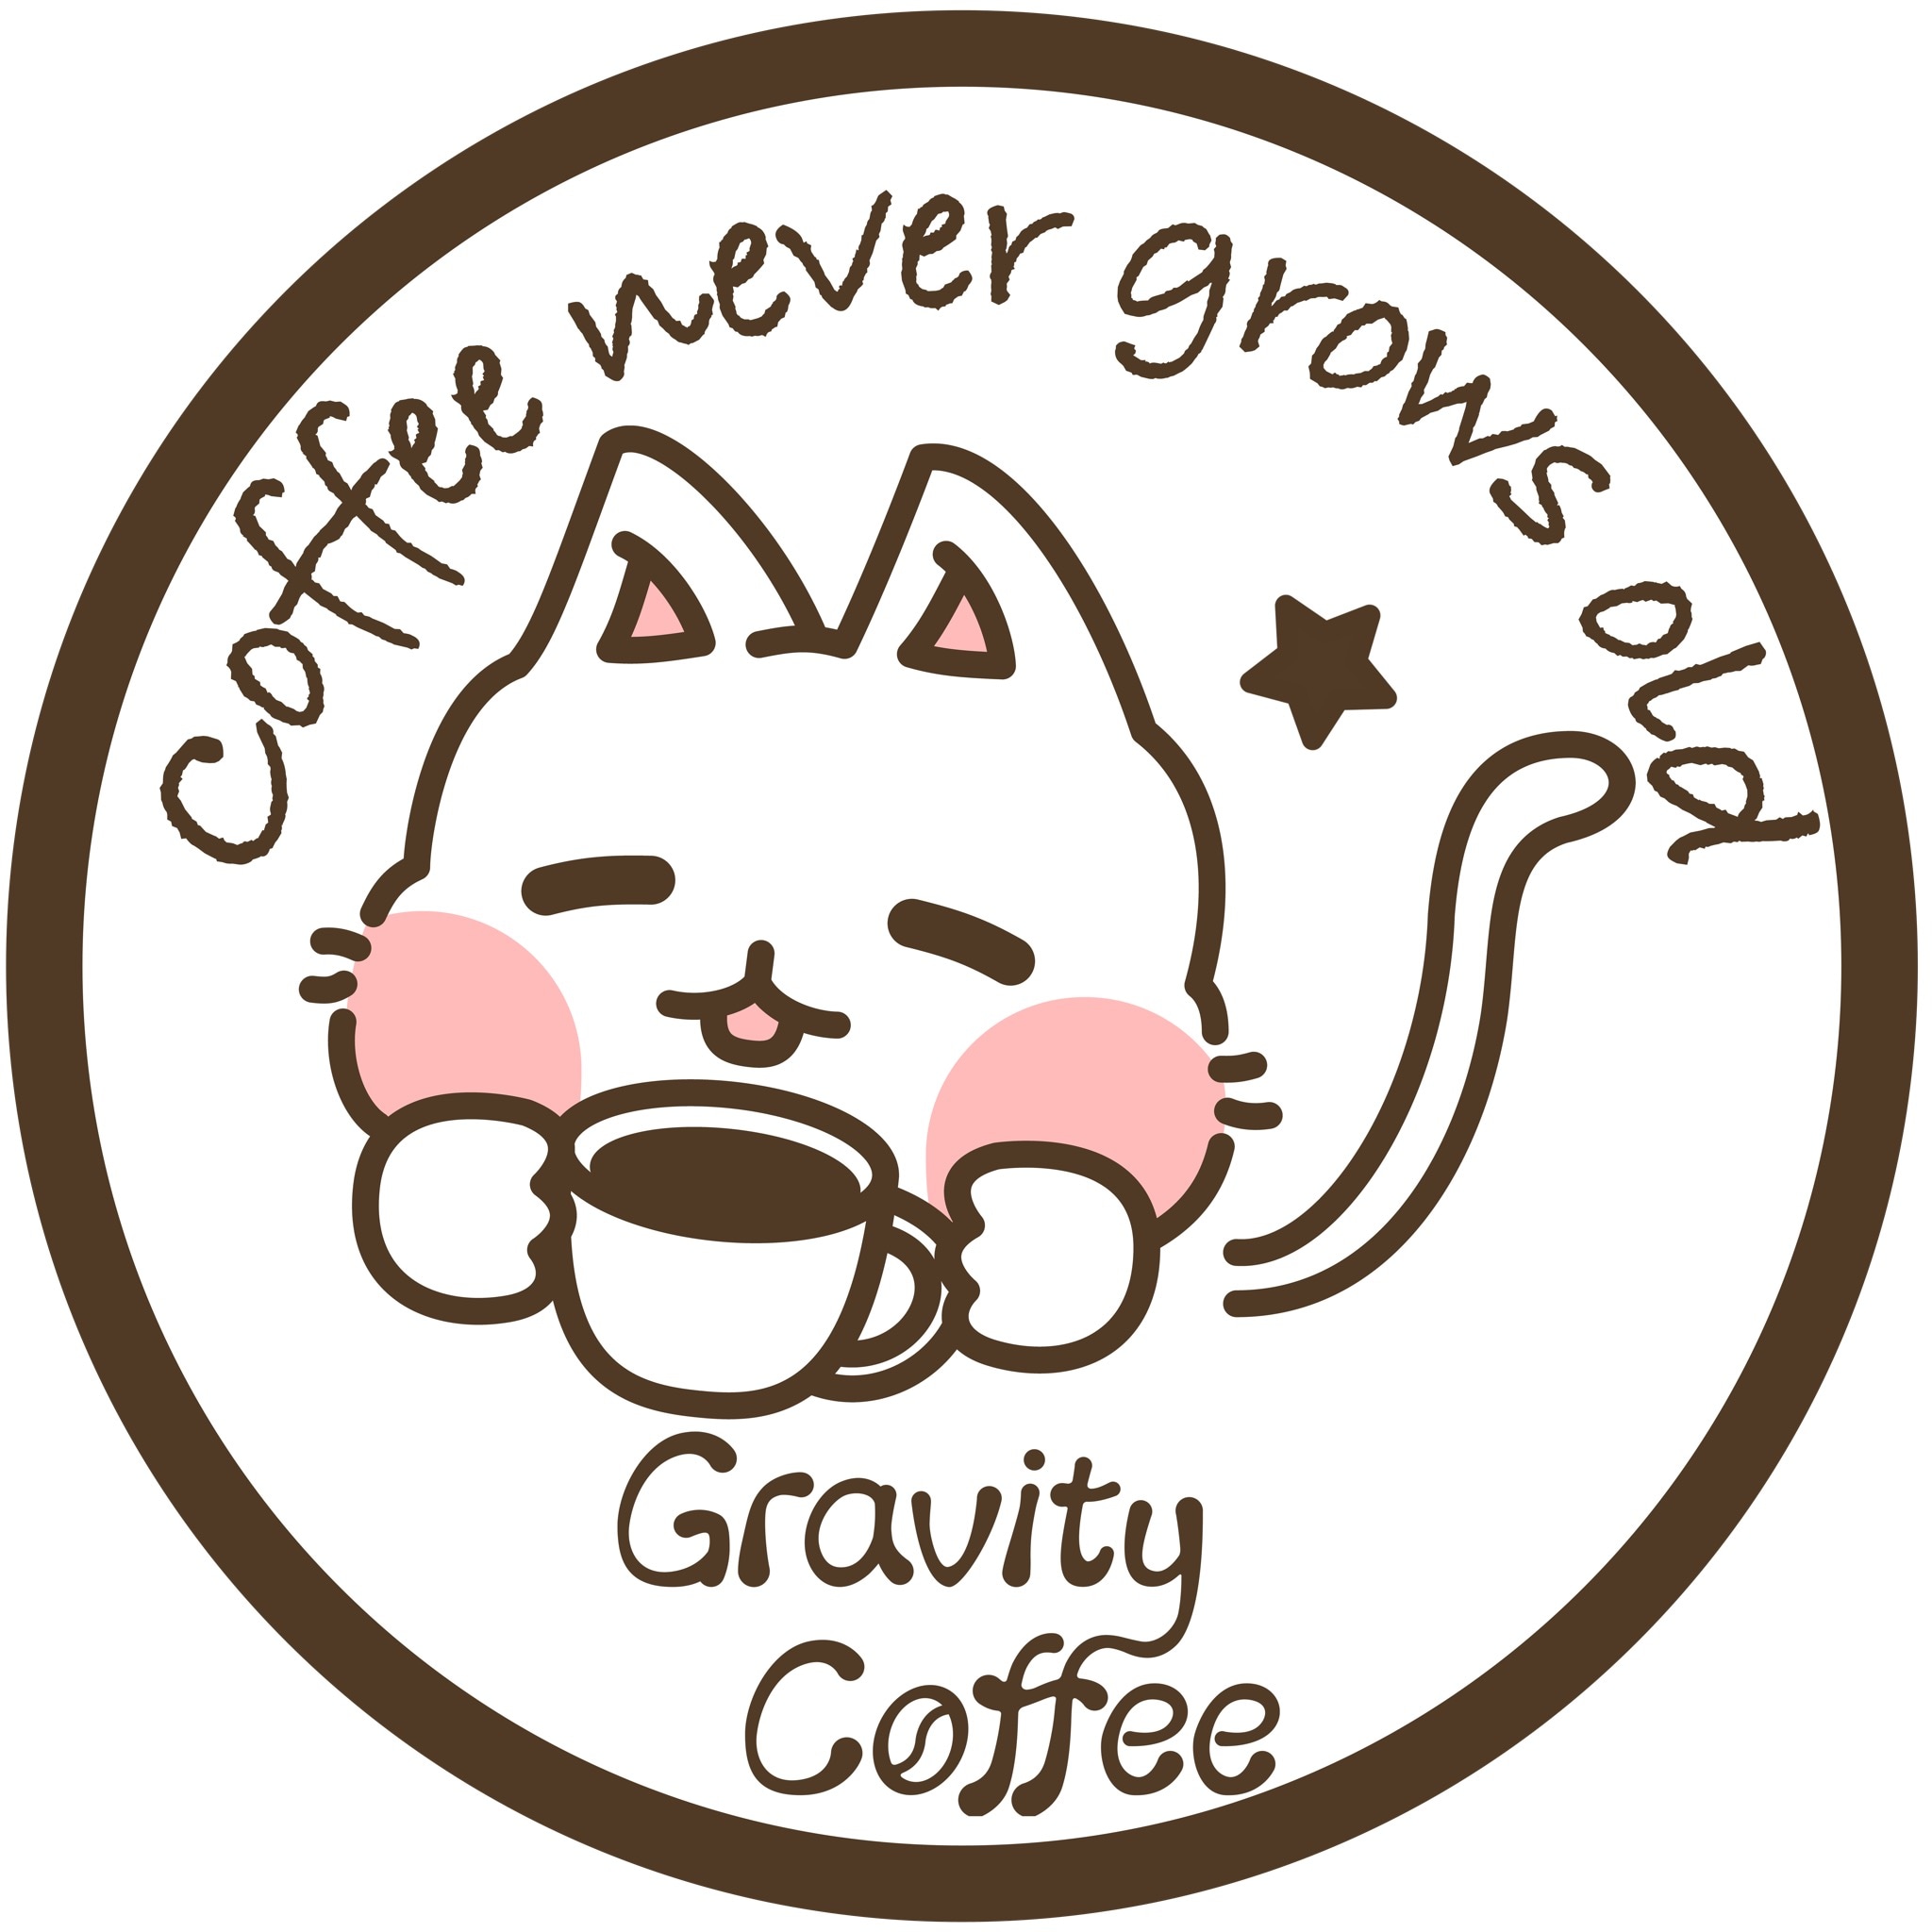 スペシャルティコーヒー専門店 Gravity Coffee